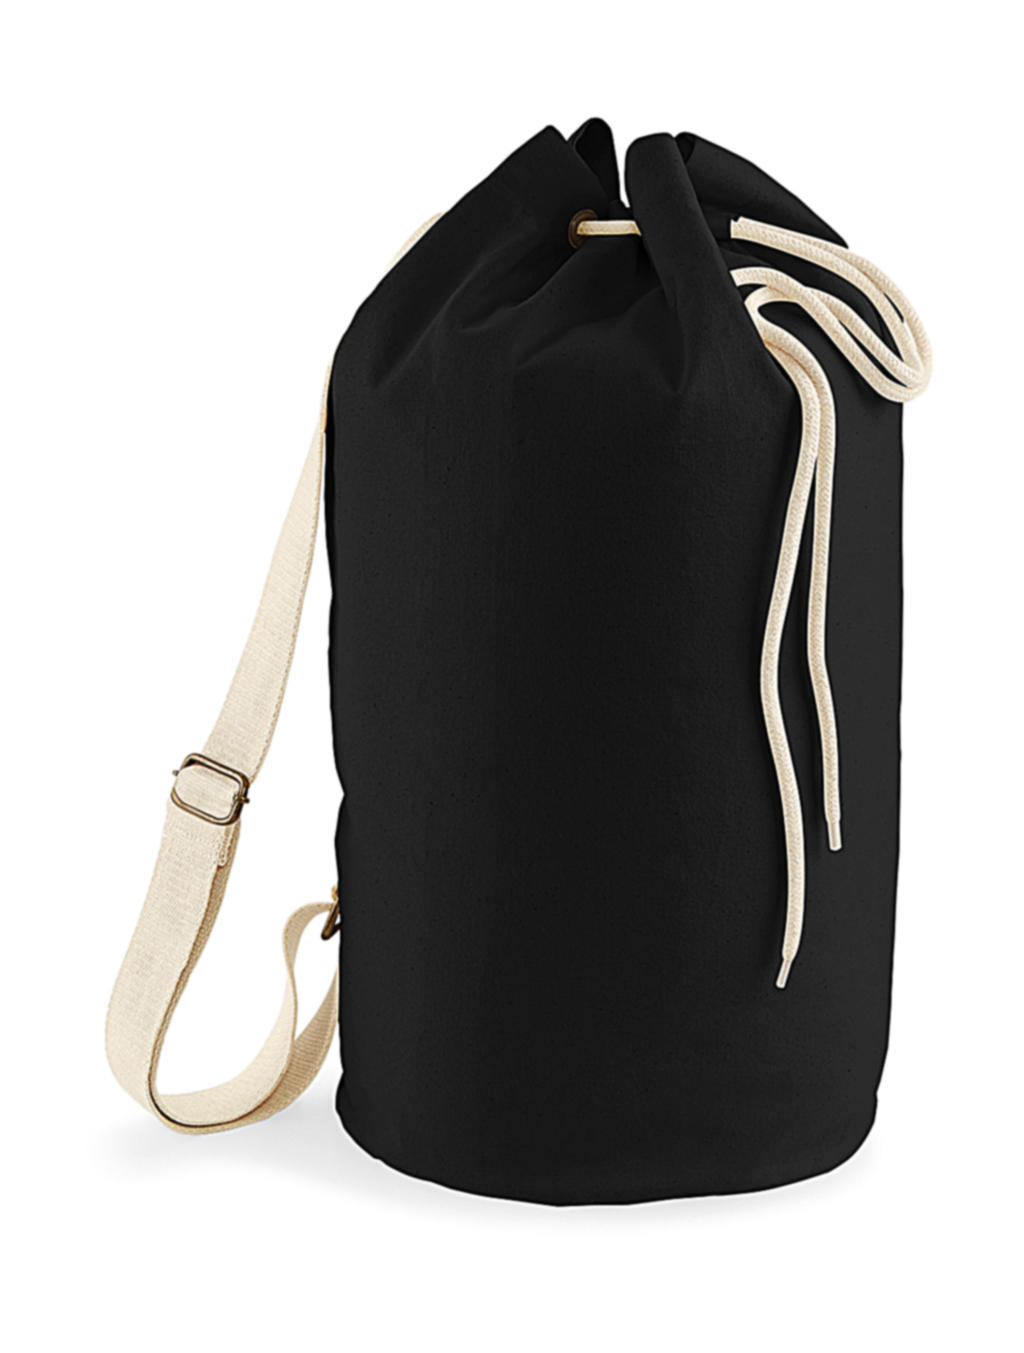  EarthAware? Organic Sea Bag in Farbe Black